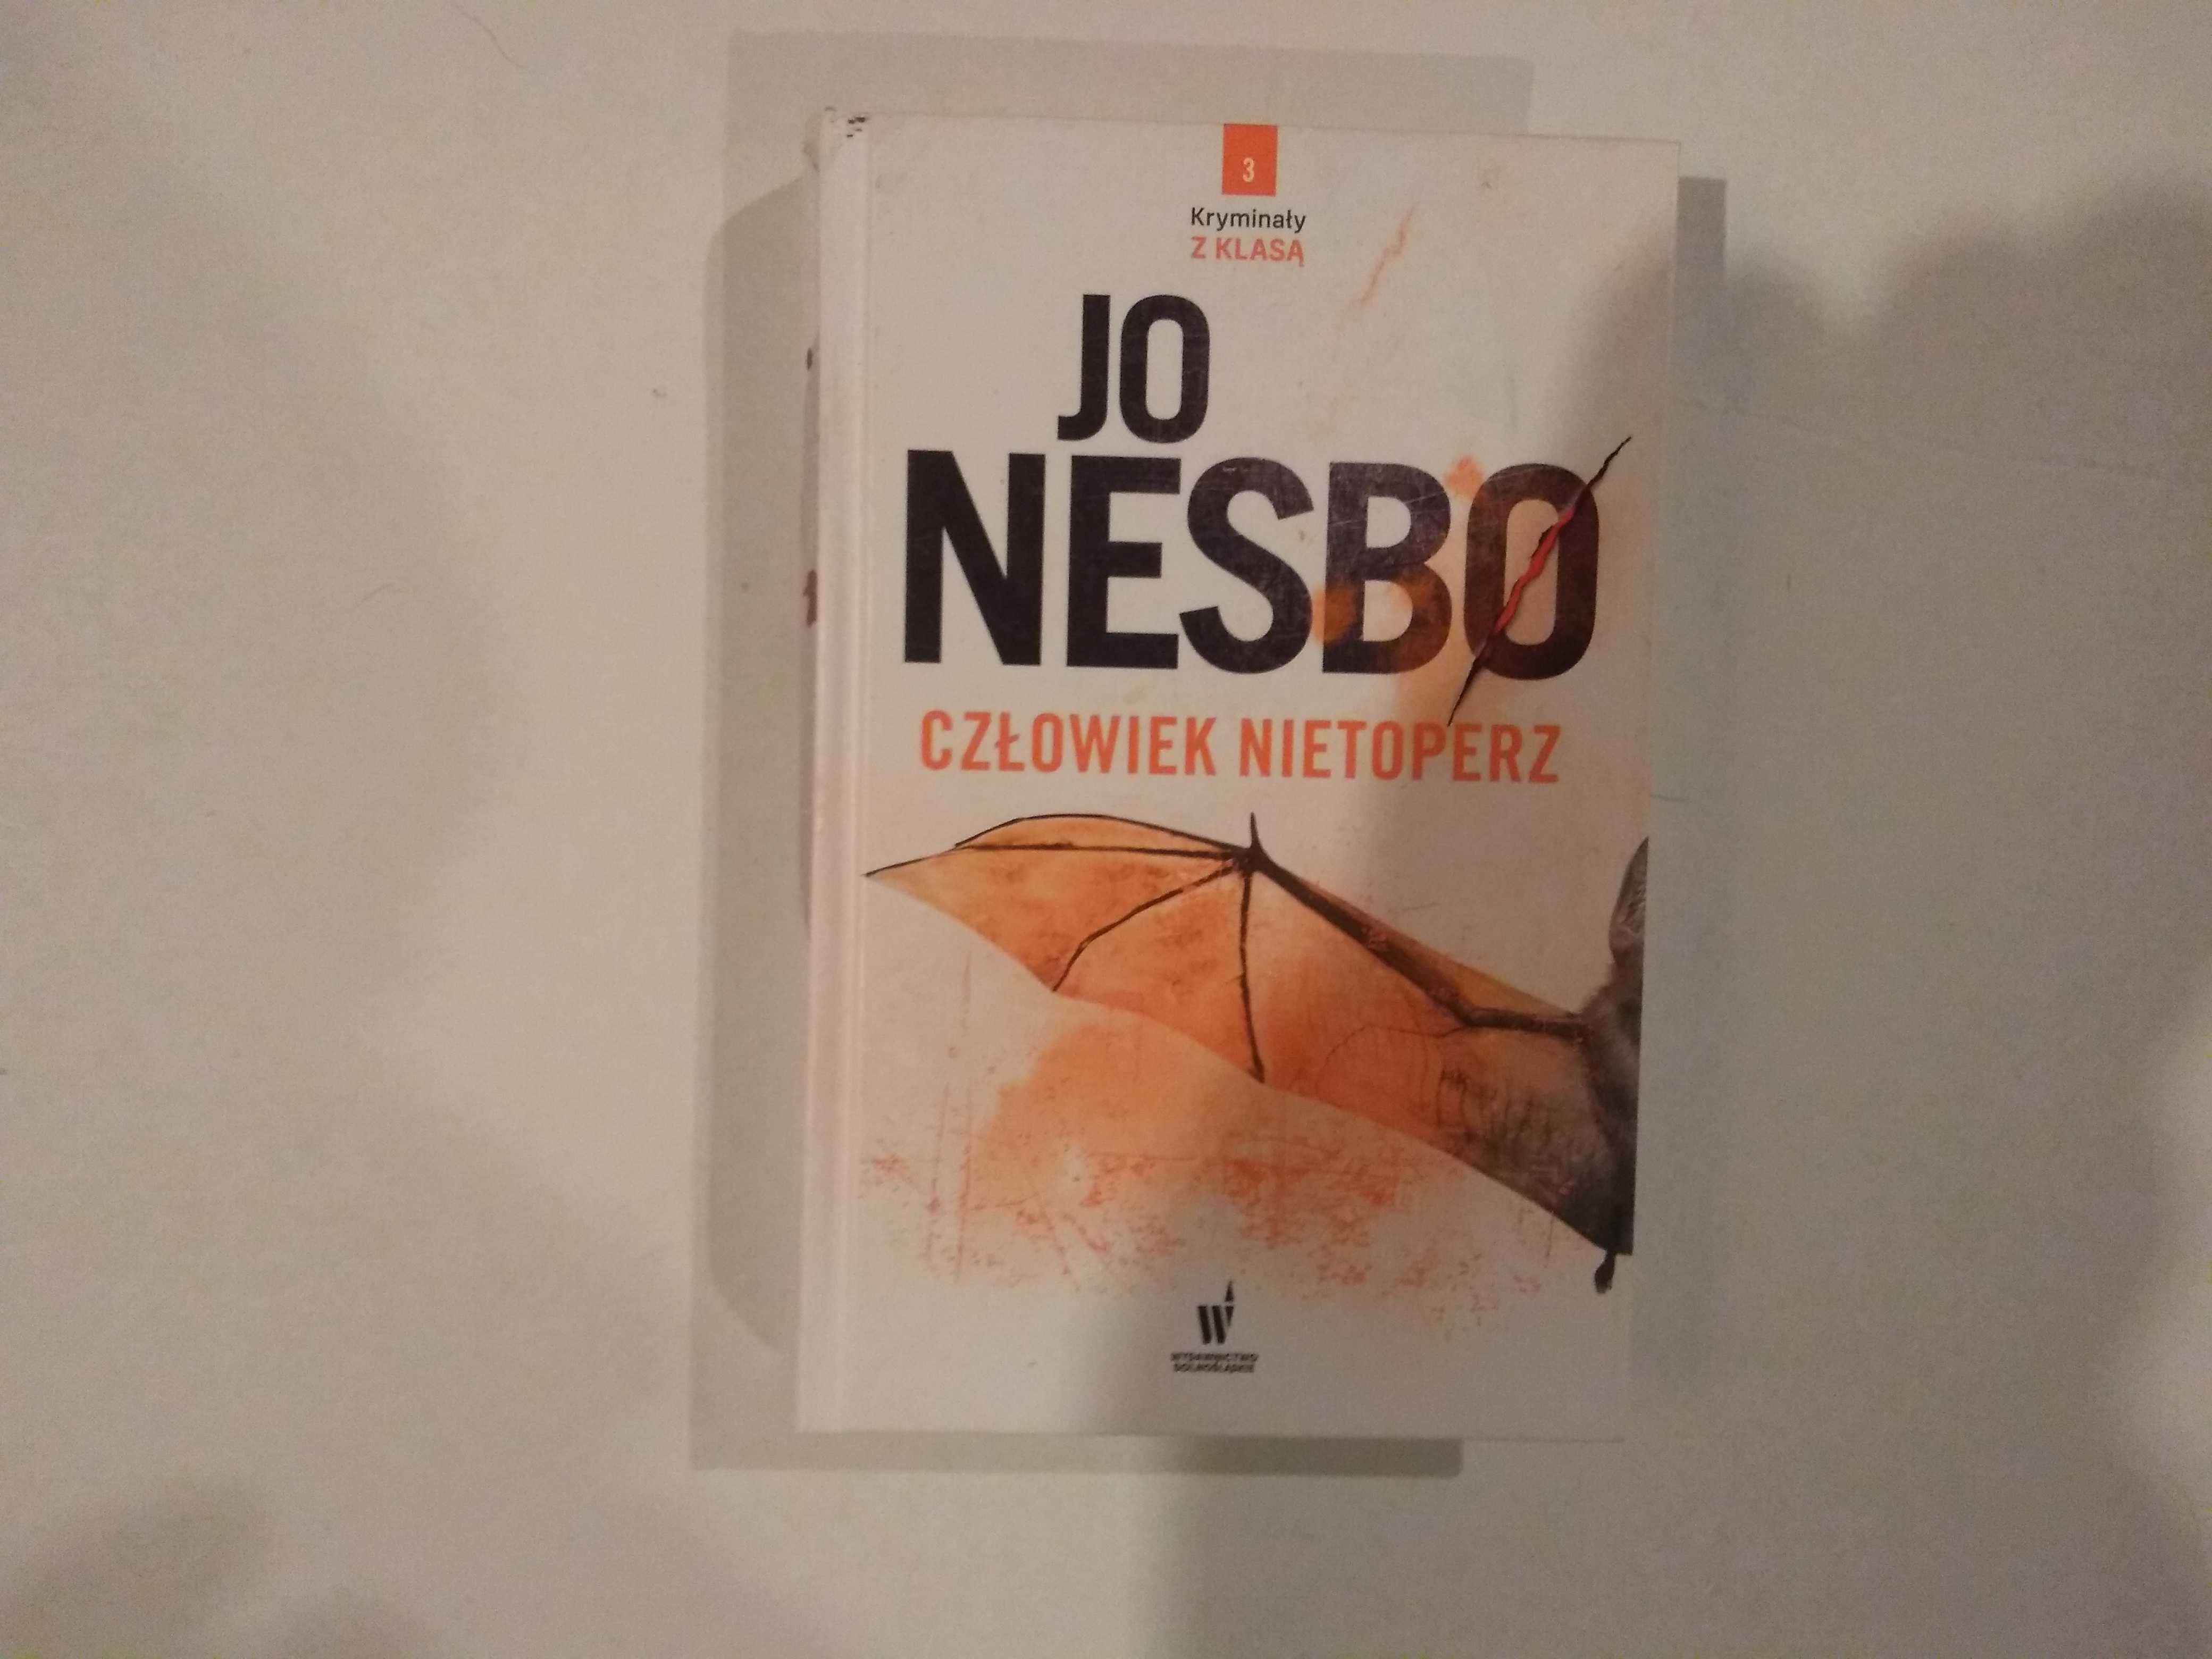 Dobra książka - Człowiek nietoperz Jo Nesbo